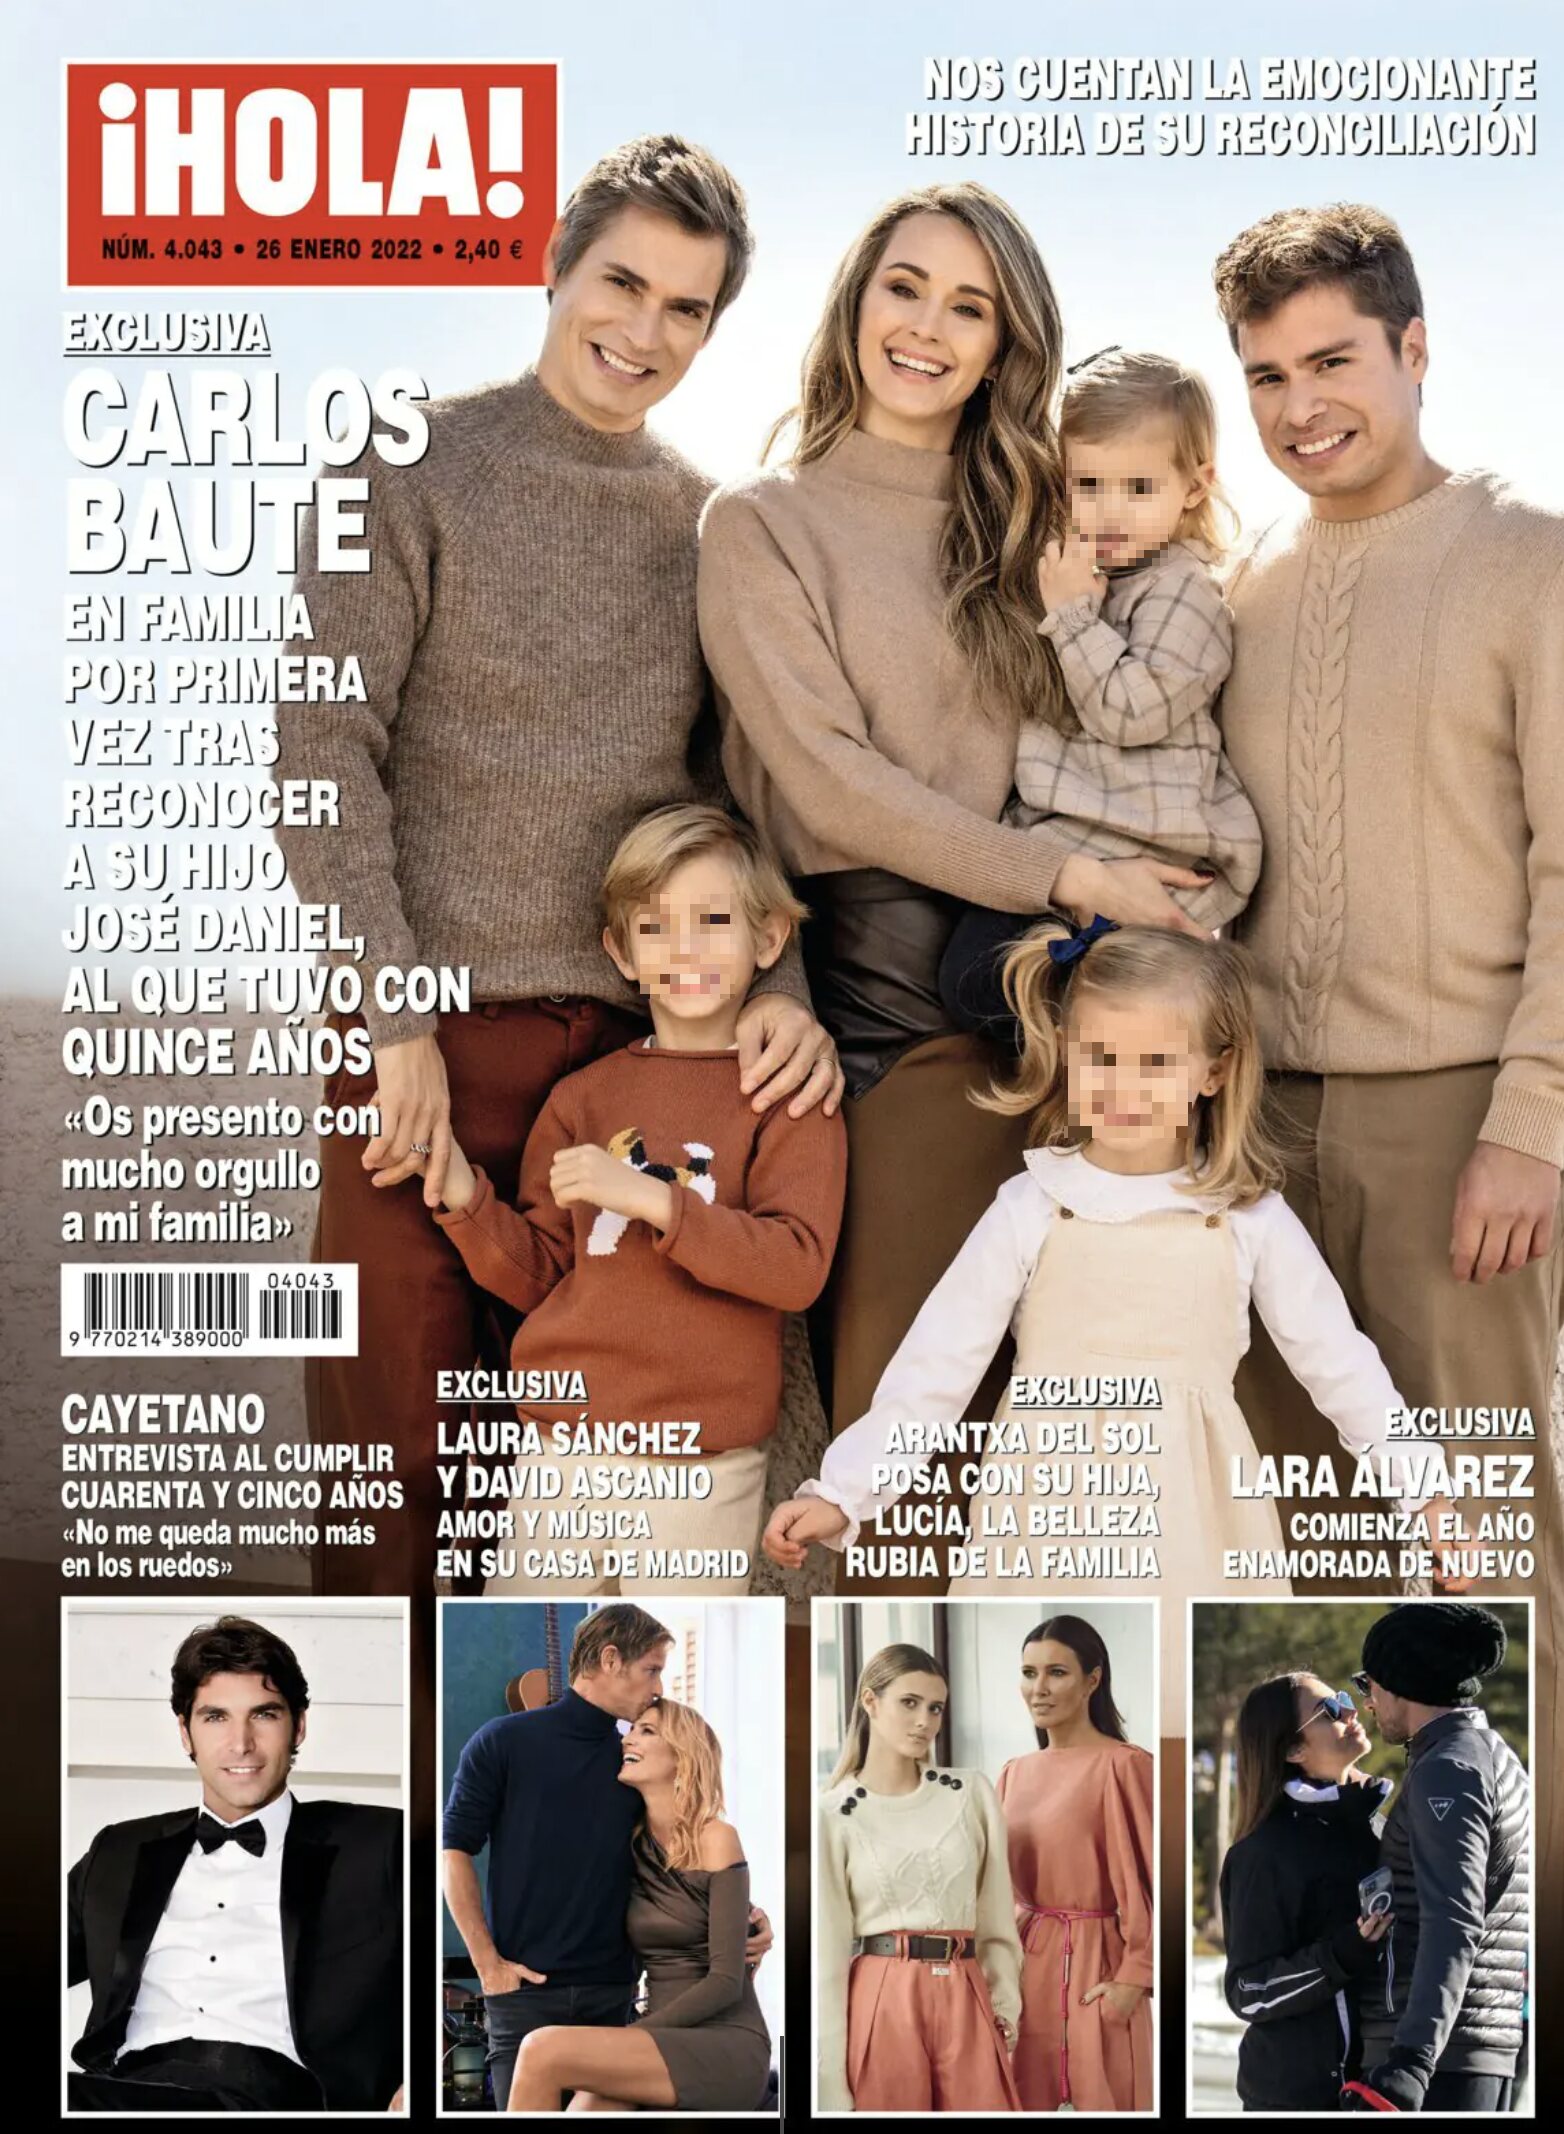 Carlos Baute posa con toda su familia en la revista ¡Hola!